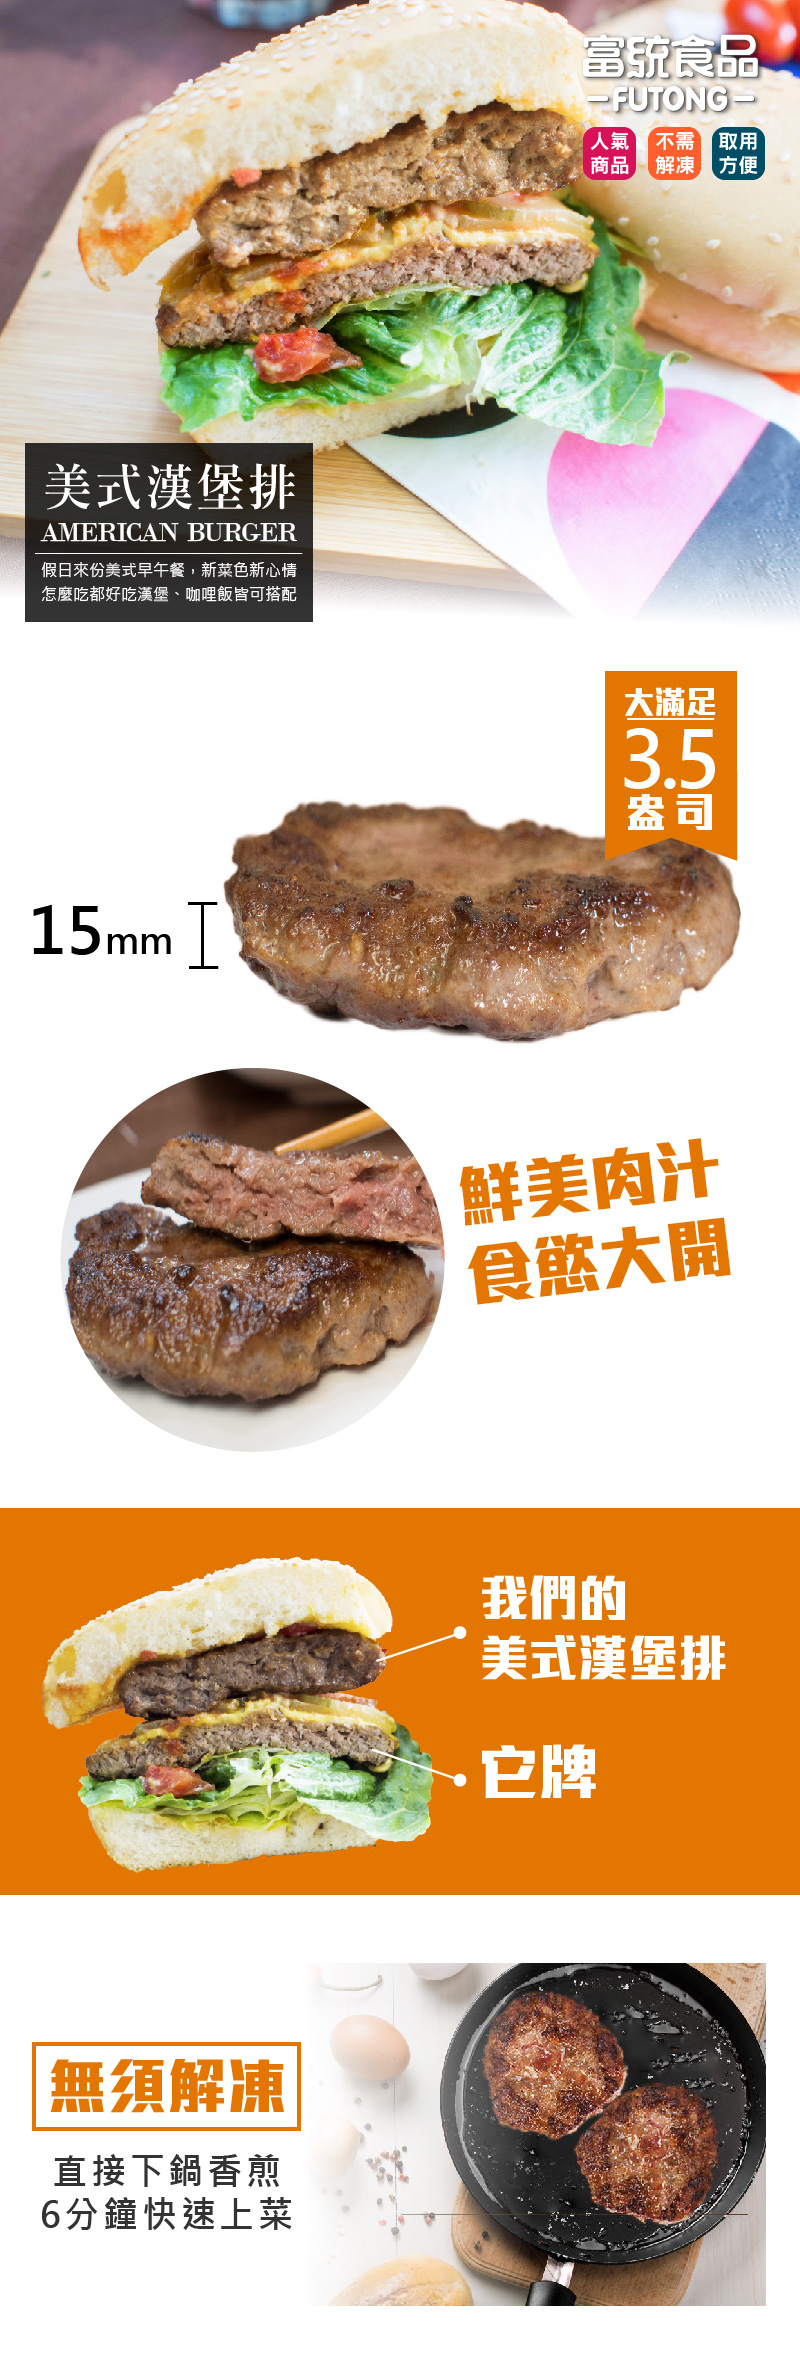 【富統食品】3.5盎司經典美式漢堡排 1000g(10片)/包(牛肉/豬肉任選)